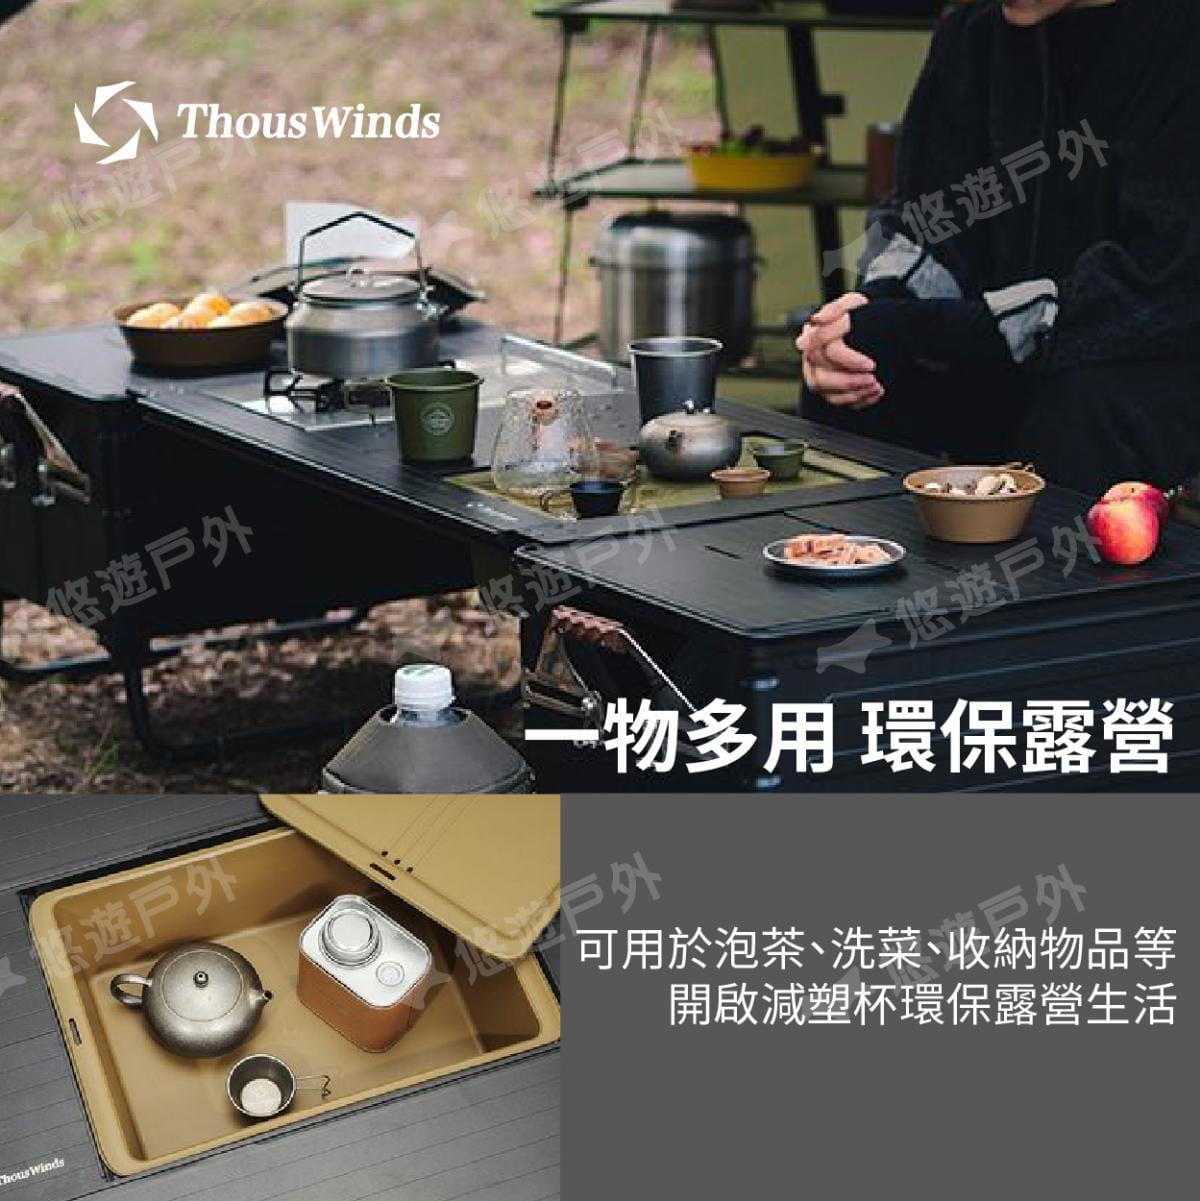 【Thous Winds】 一單元收納茶盒 三色 TW-IGT09B/G/K 悠遊戶外 5